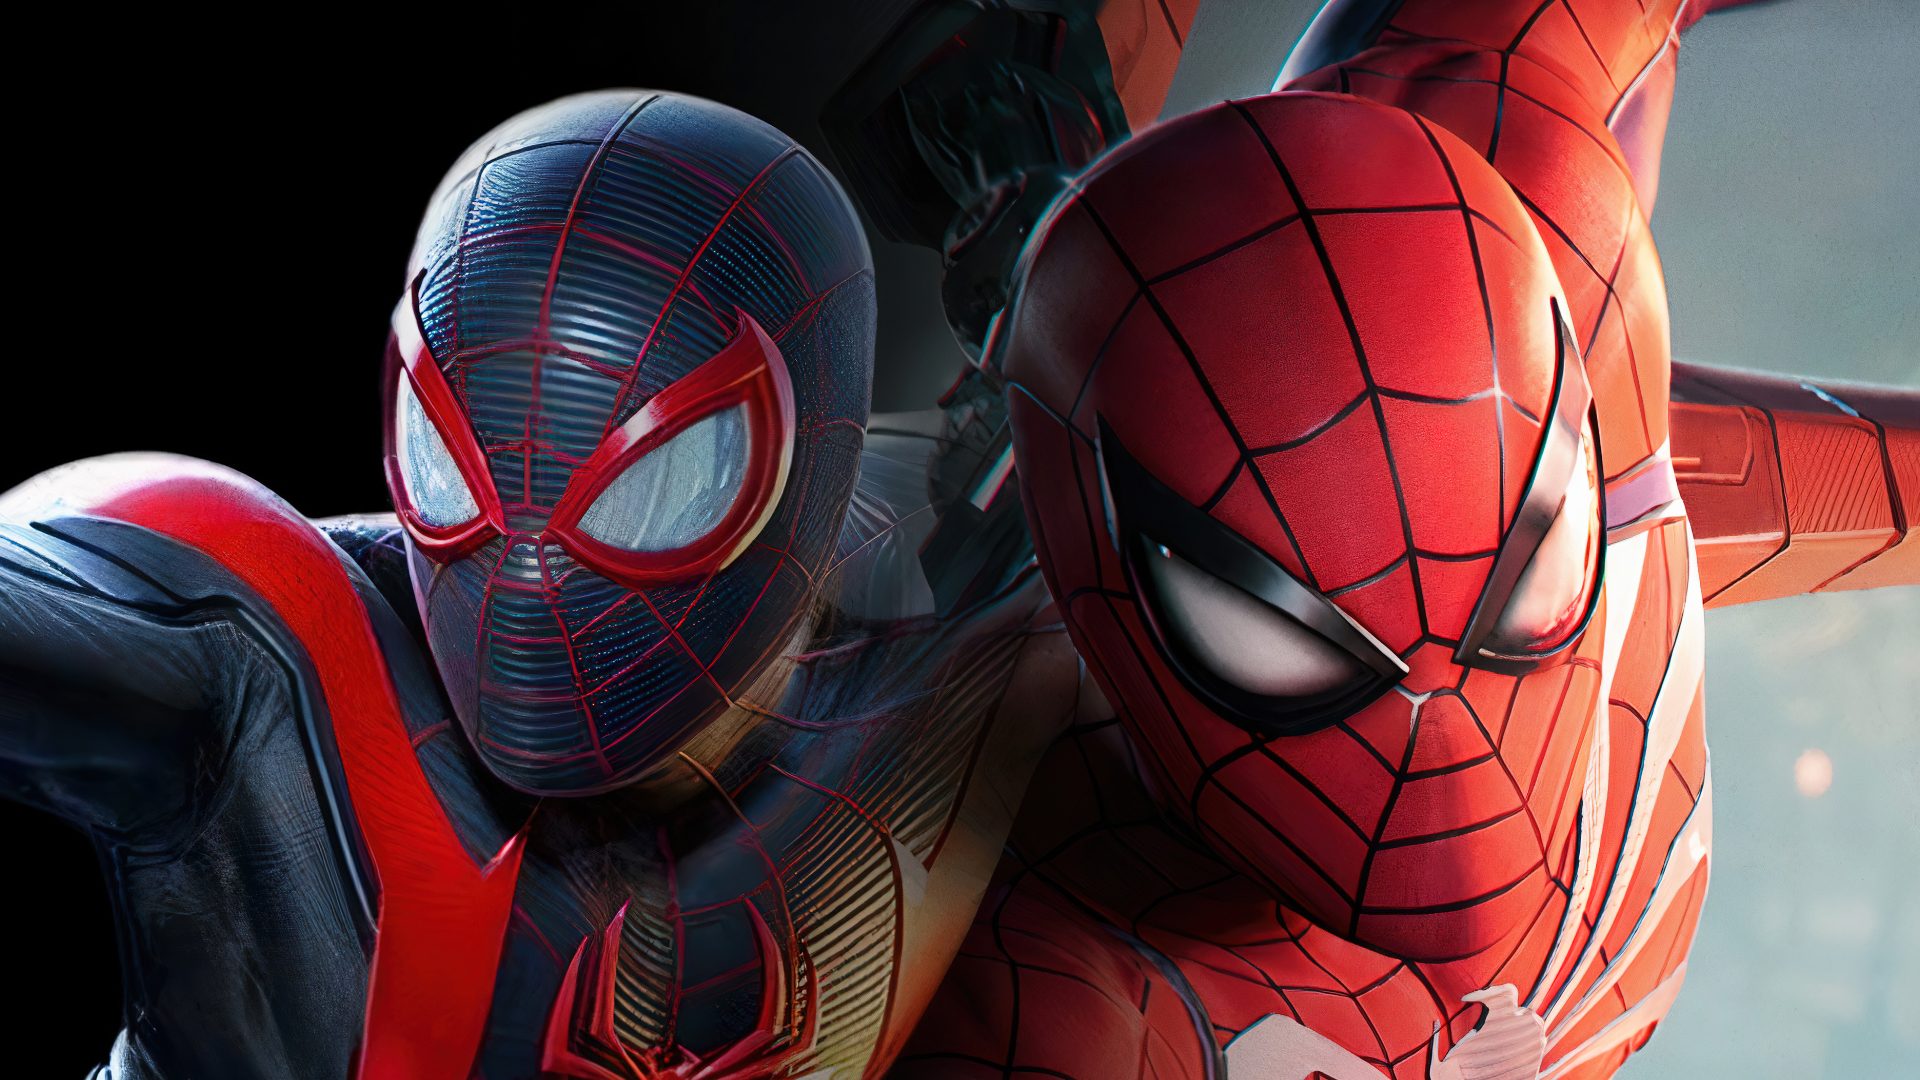 Marvel's Spider-Man 2 : où précommander le jeu de l'année ?